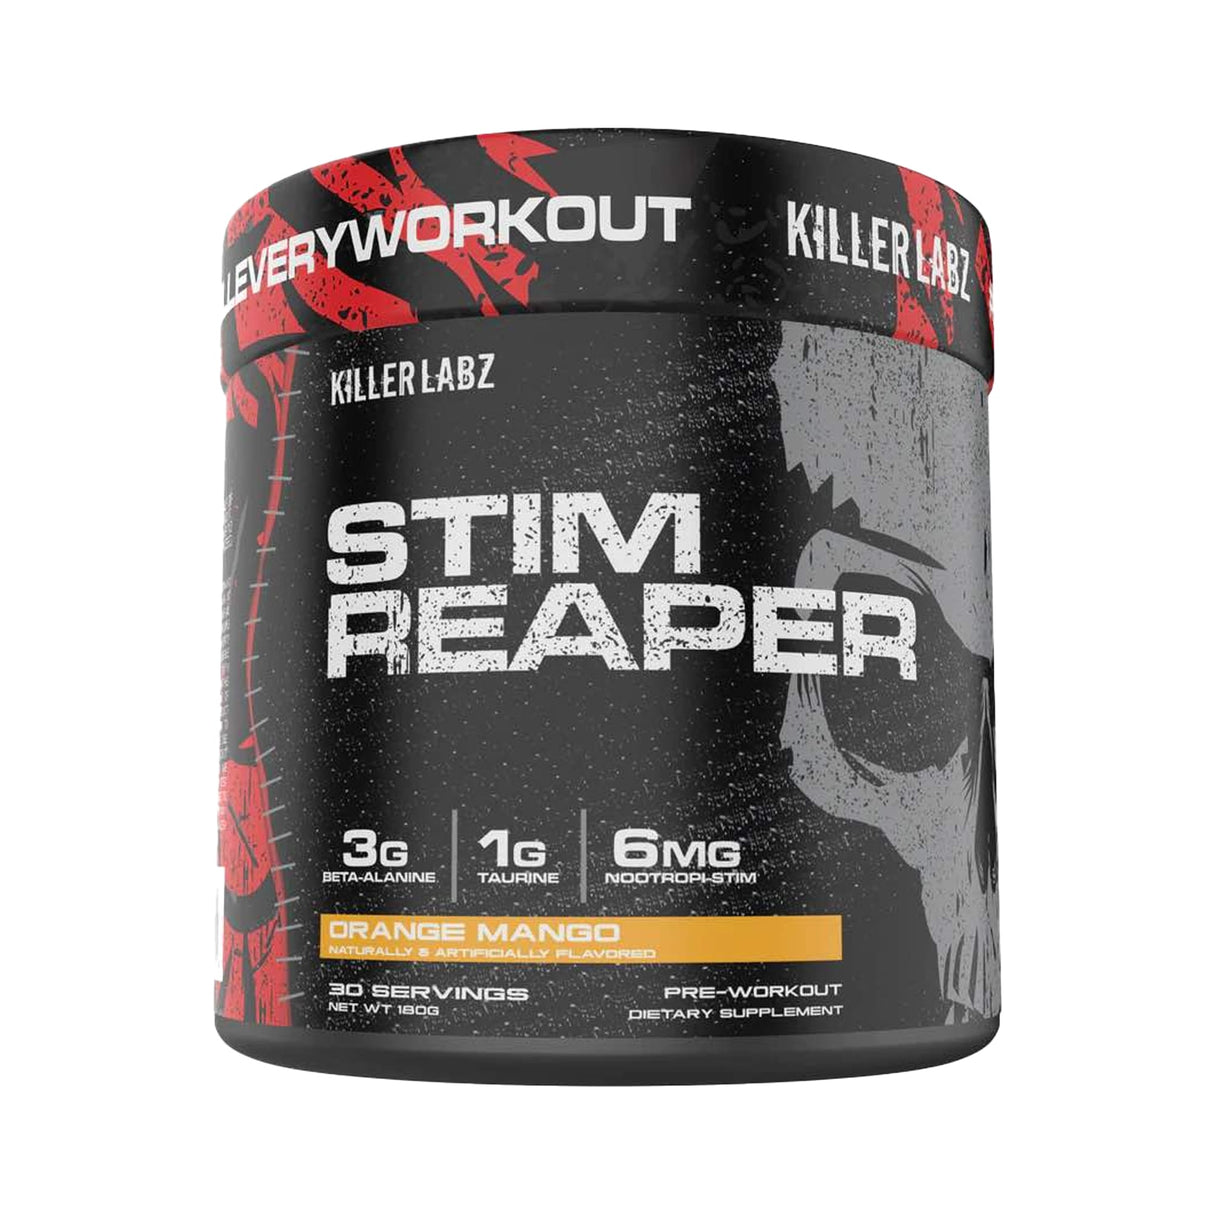 STIM REAPER by Killer Labz - Muscle Factory, LLC